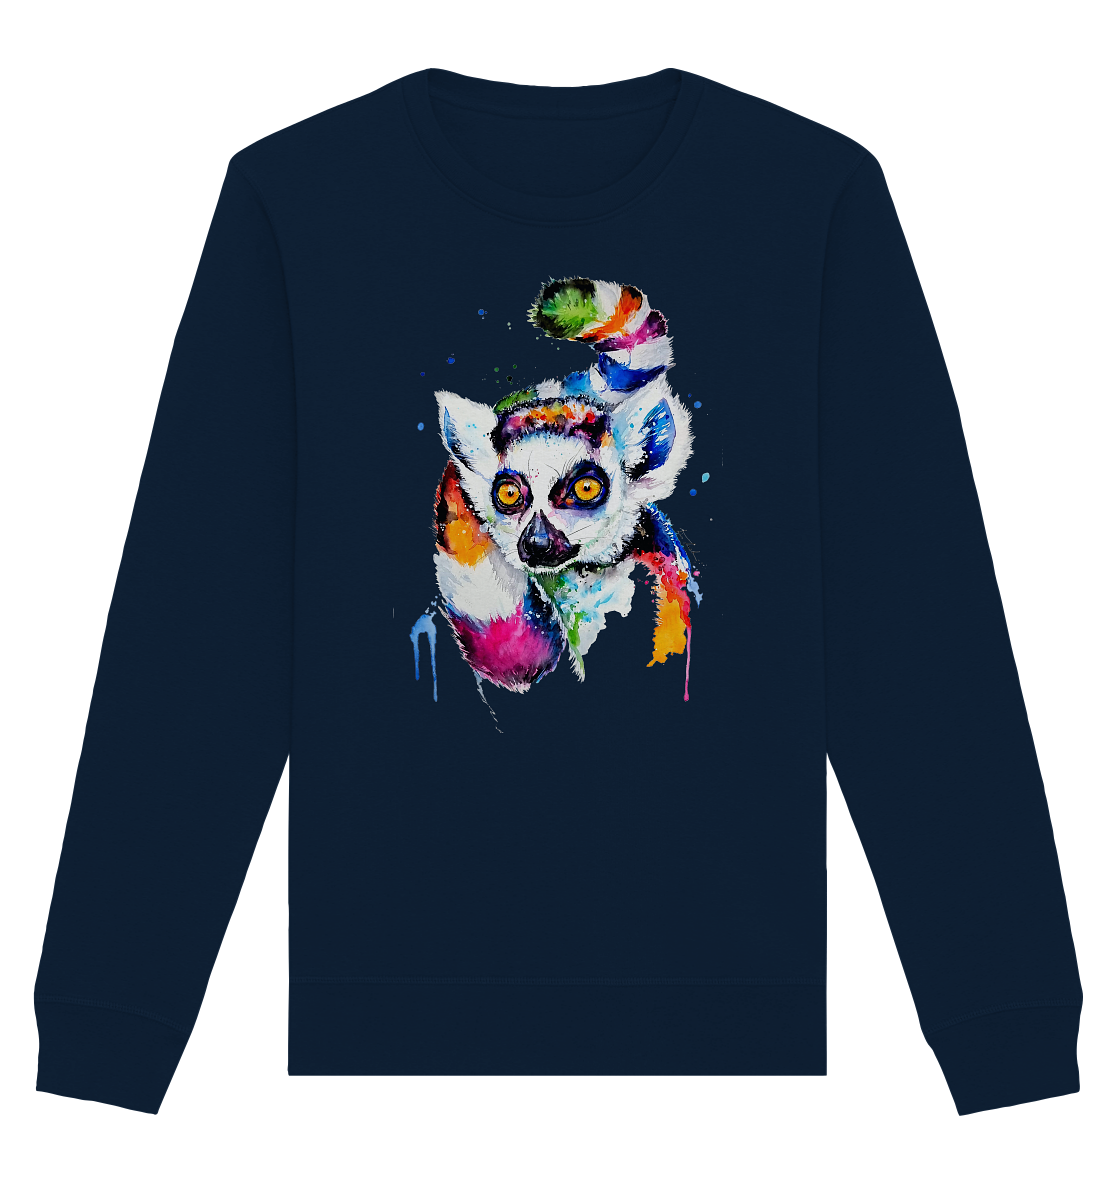 Bunter Katta - Organic Basic Unisex Sweatshirt